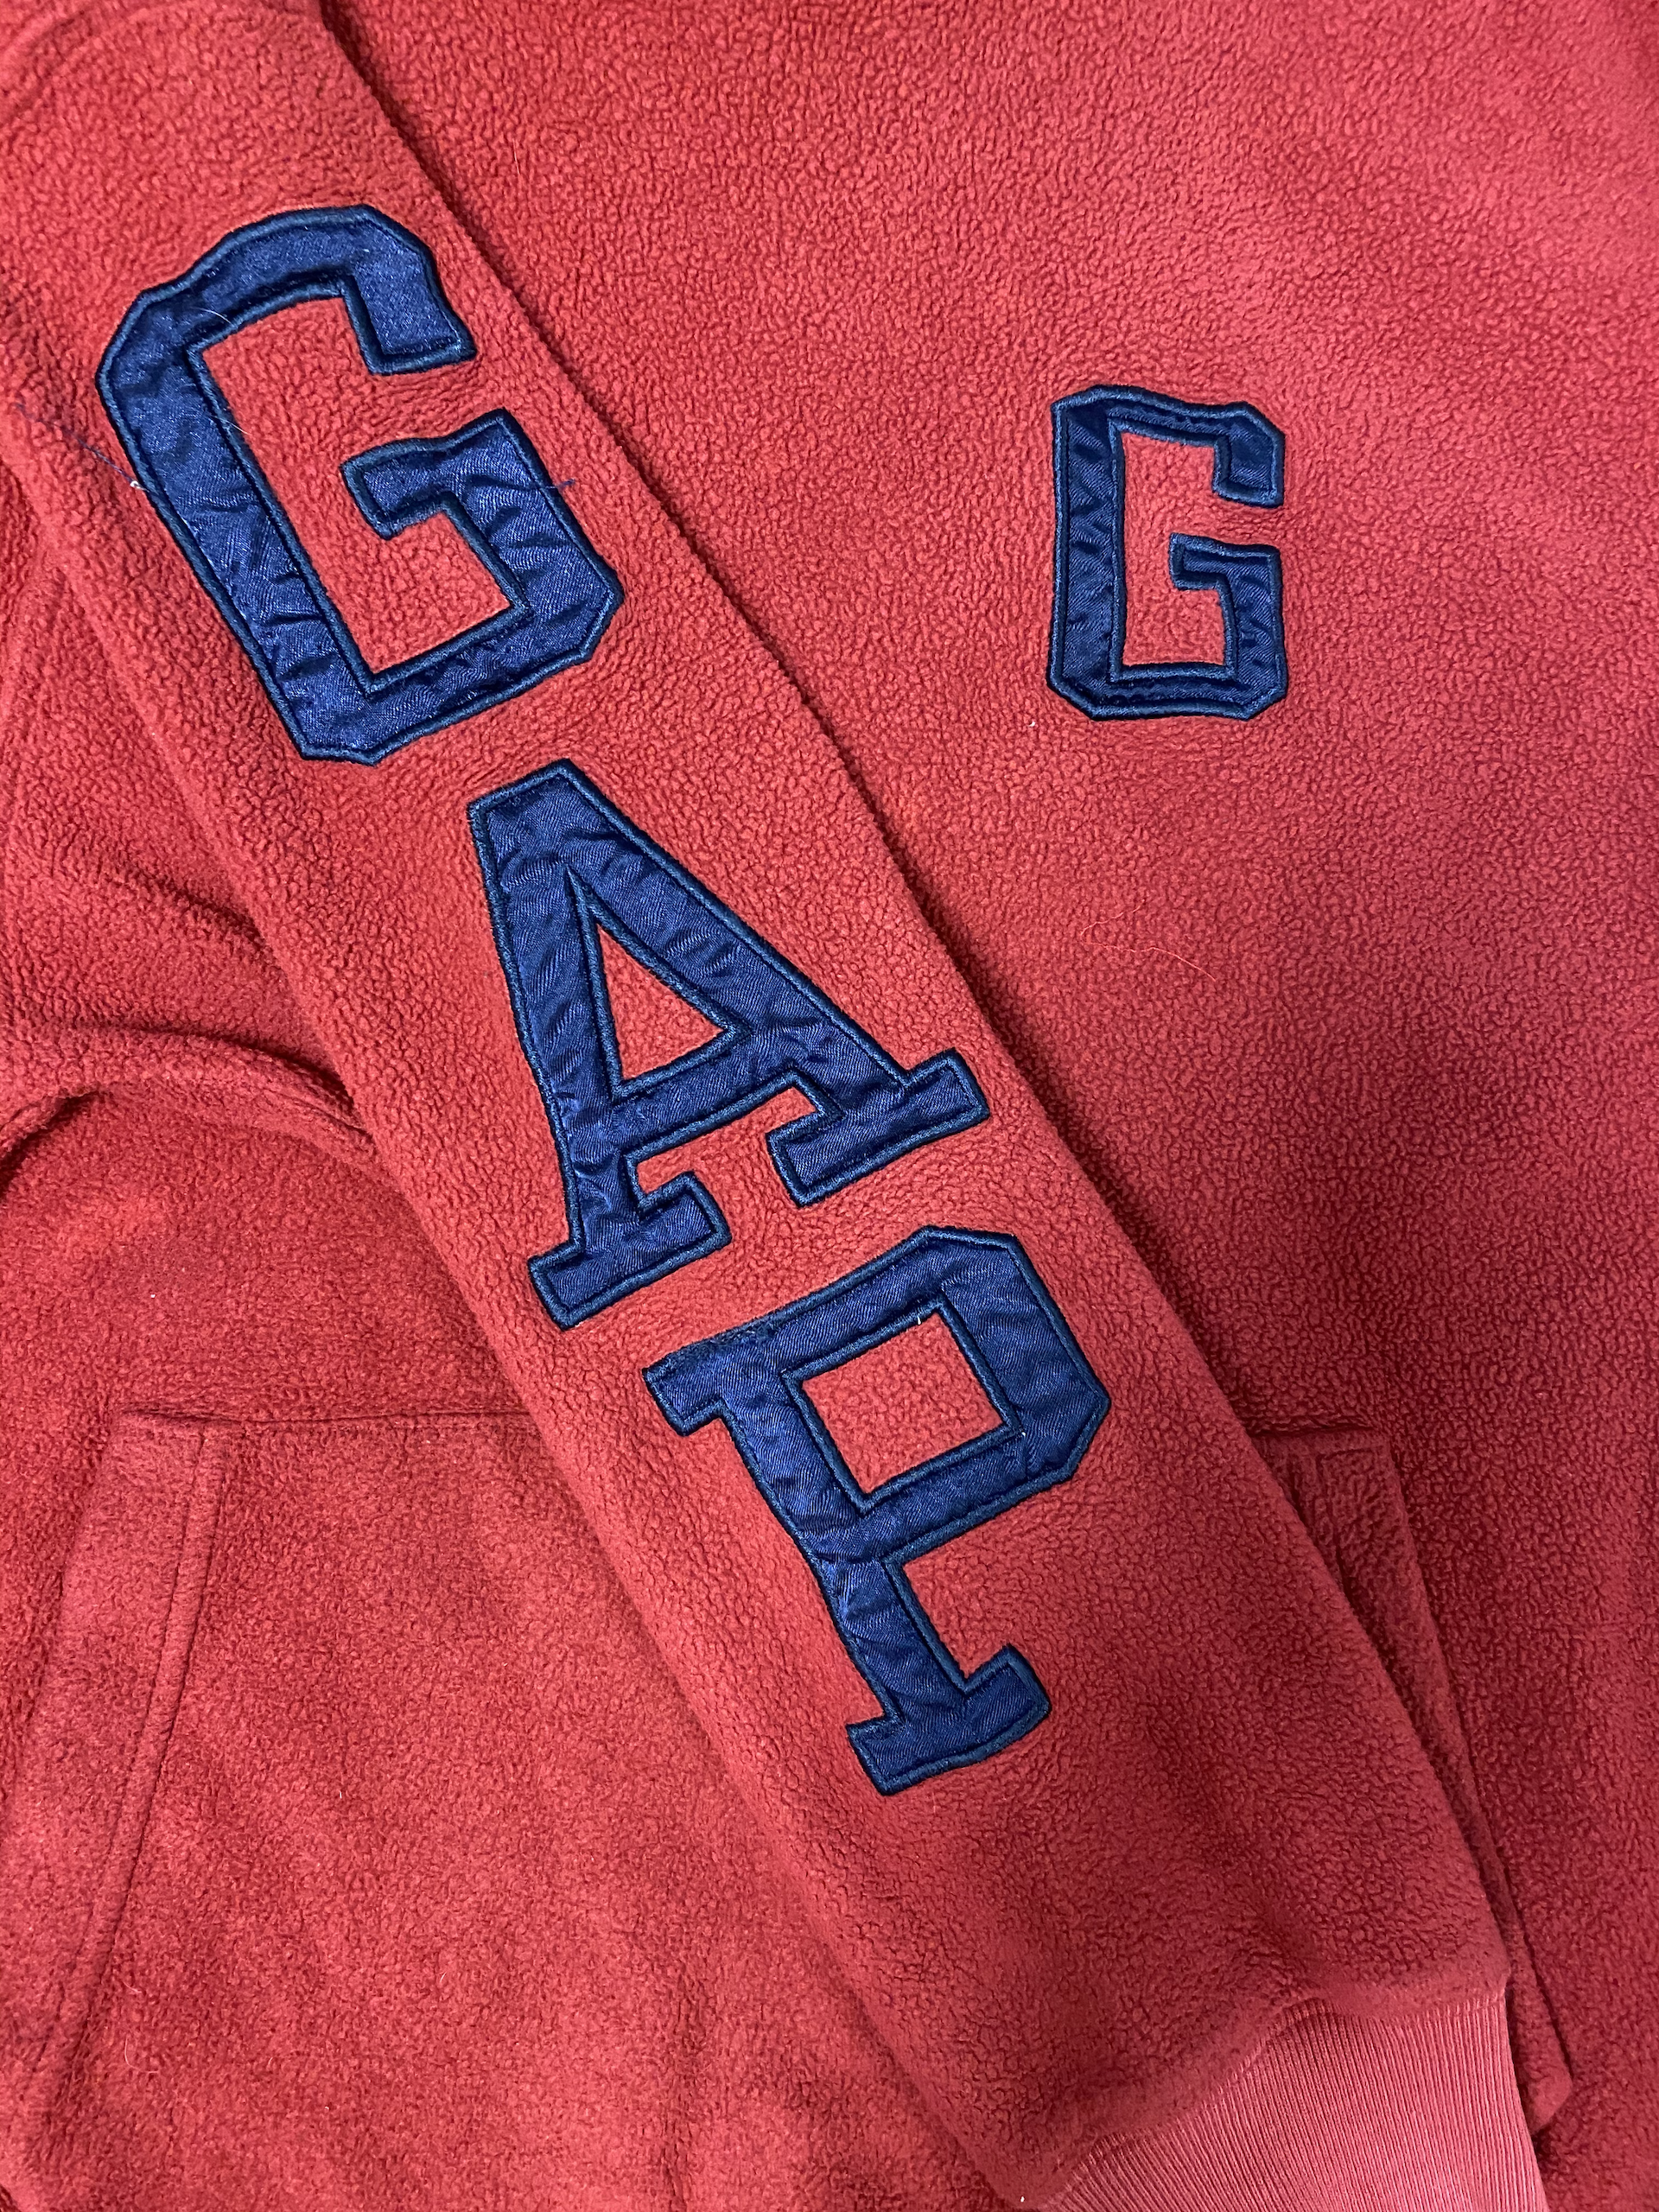 Gap Pullover Hoodie Kids - Red